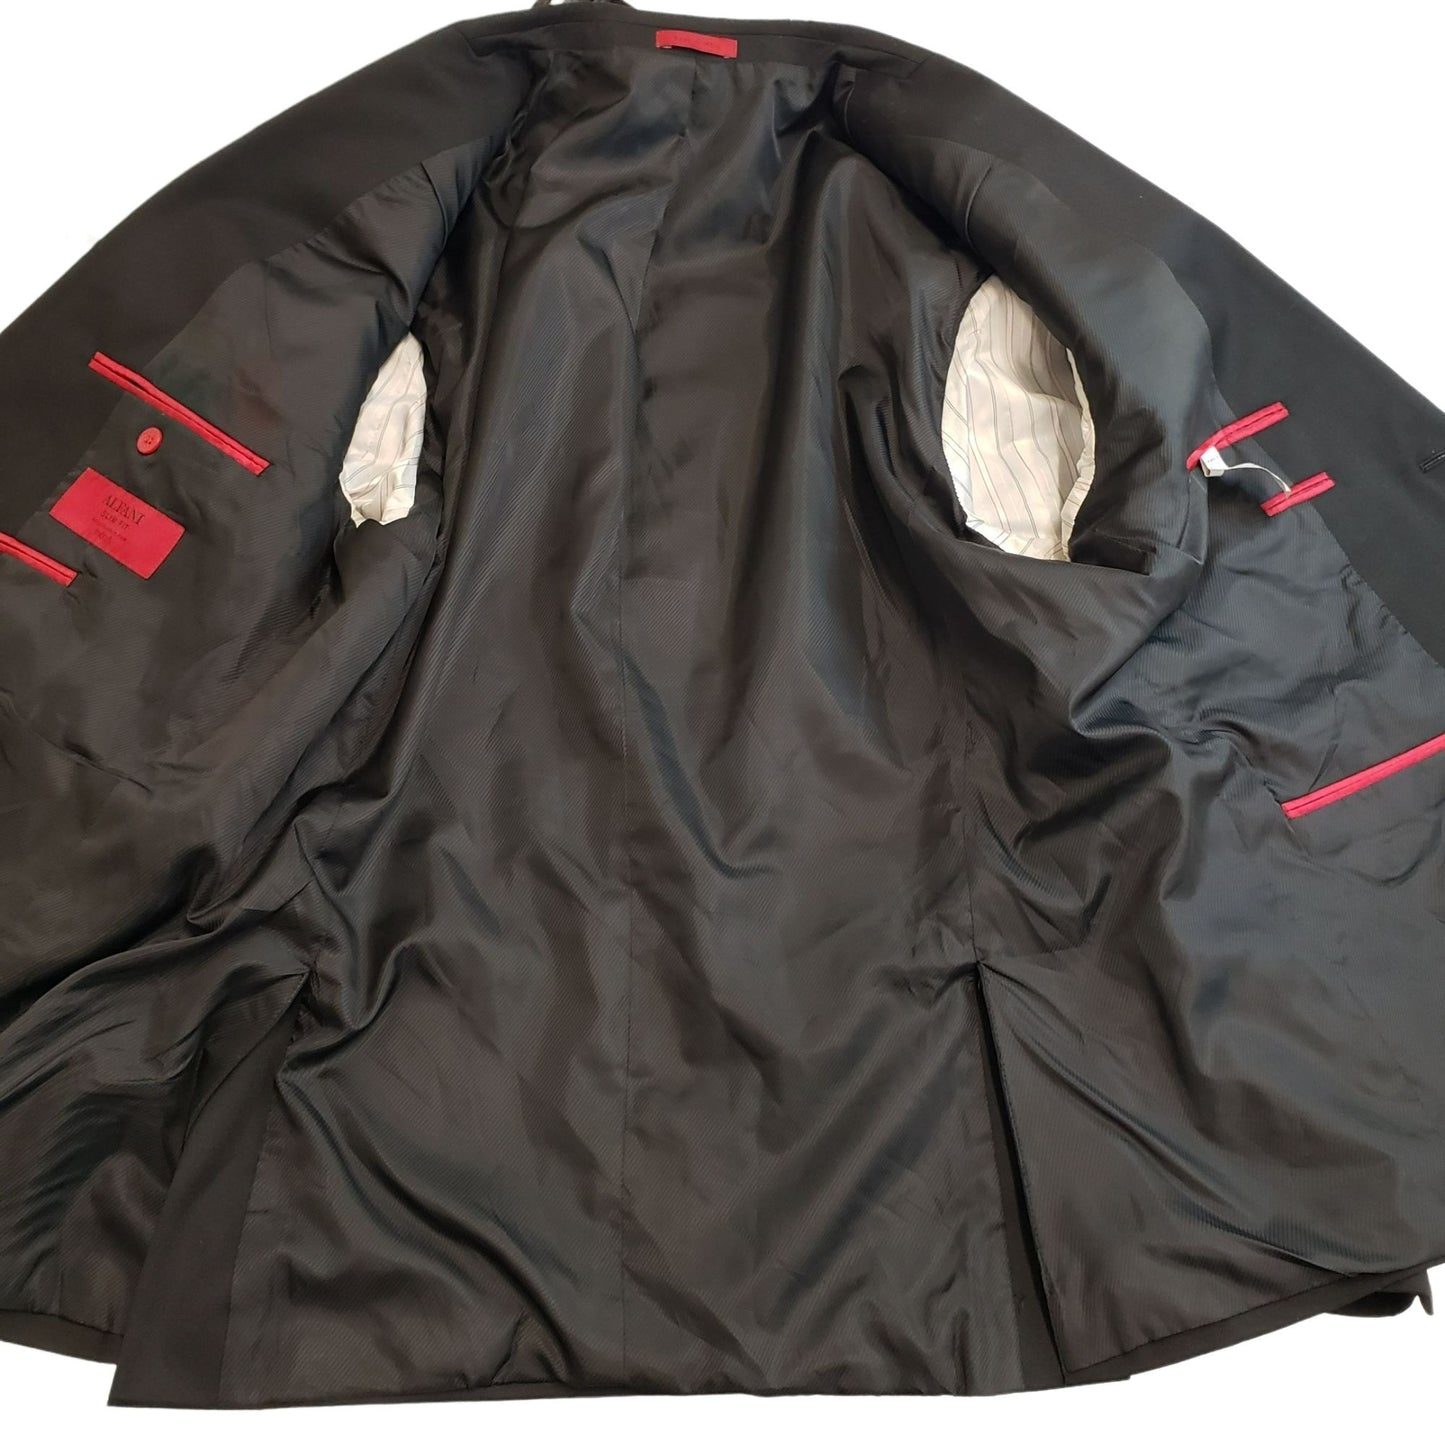 Alfani Slim Fit 2 Button Black Suit Sport Jacket Size 46R